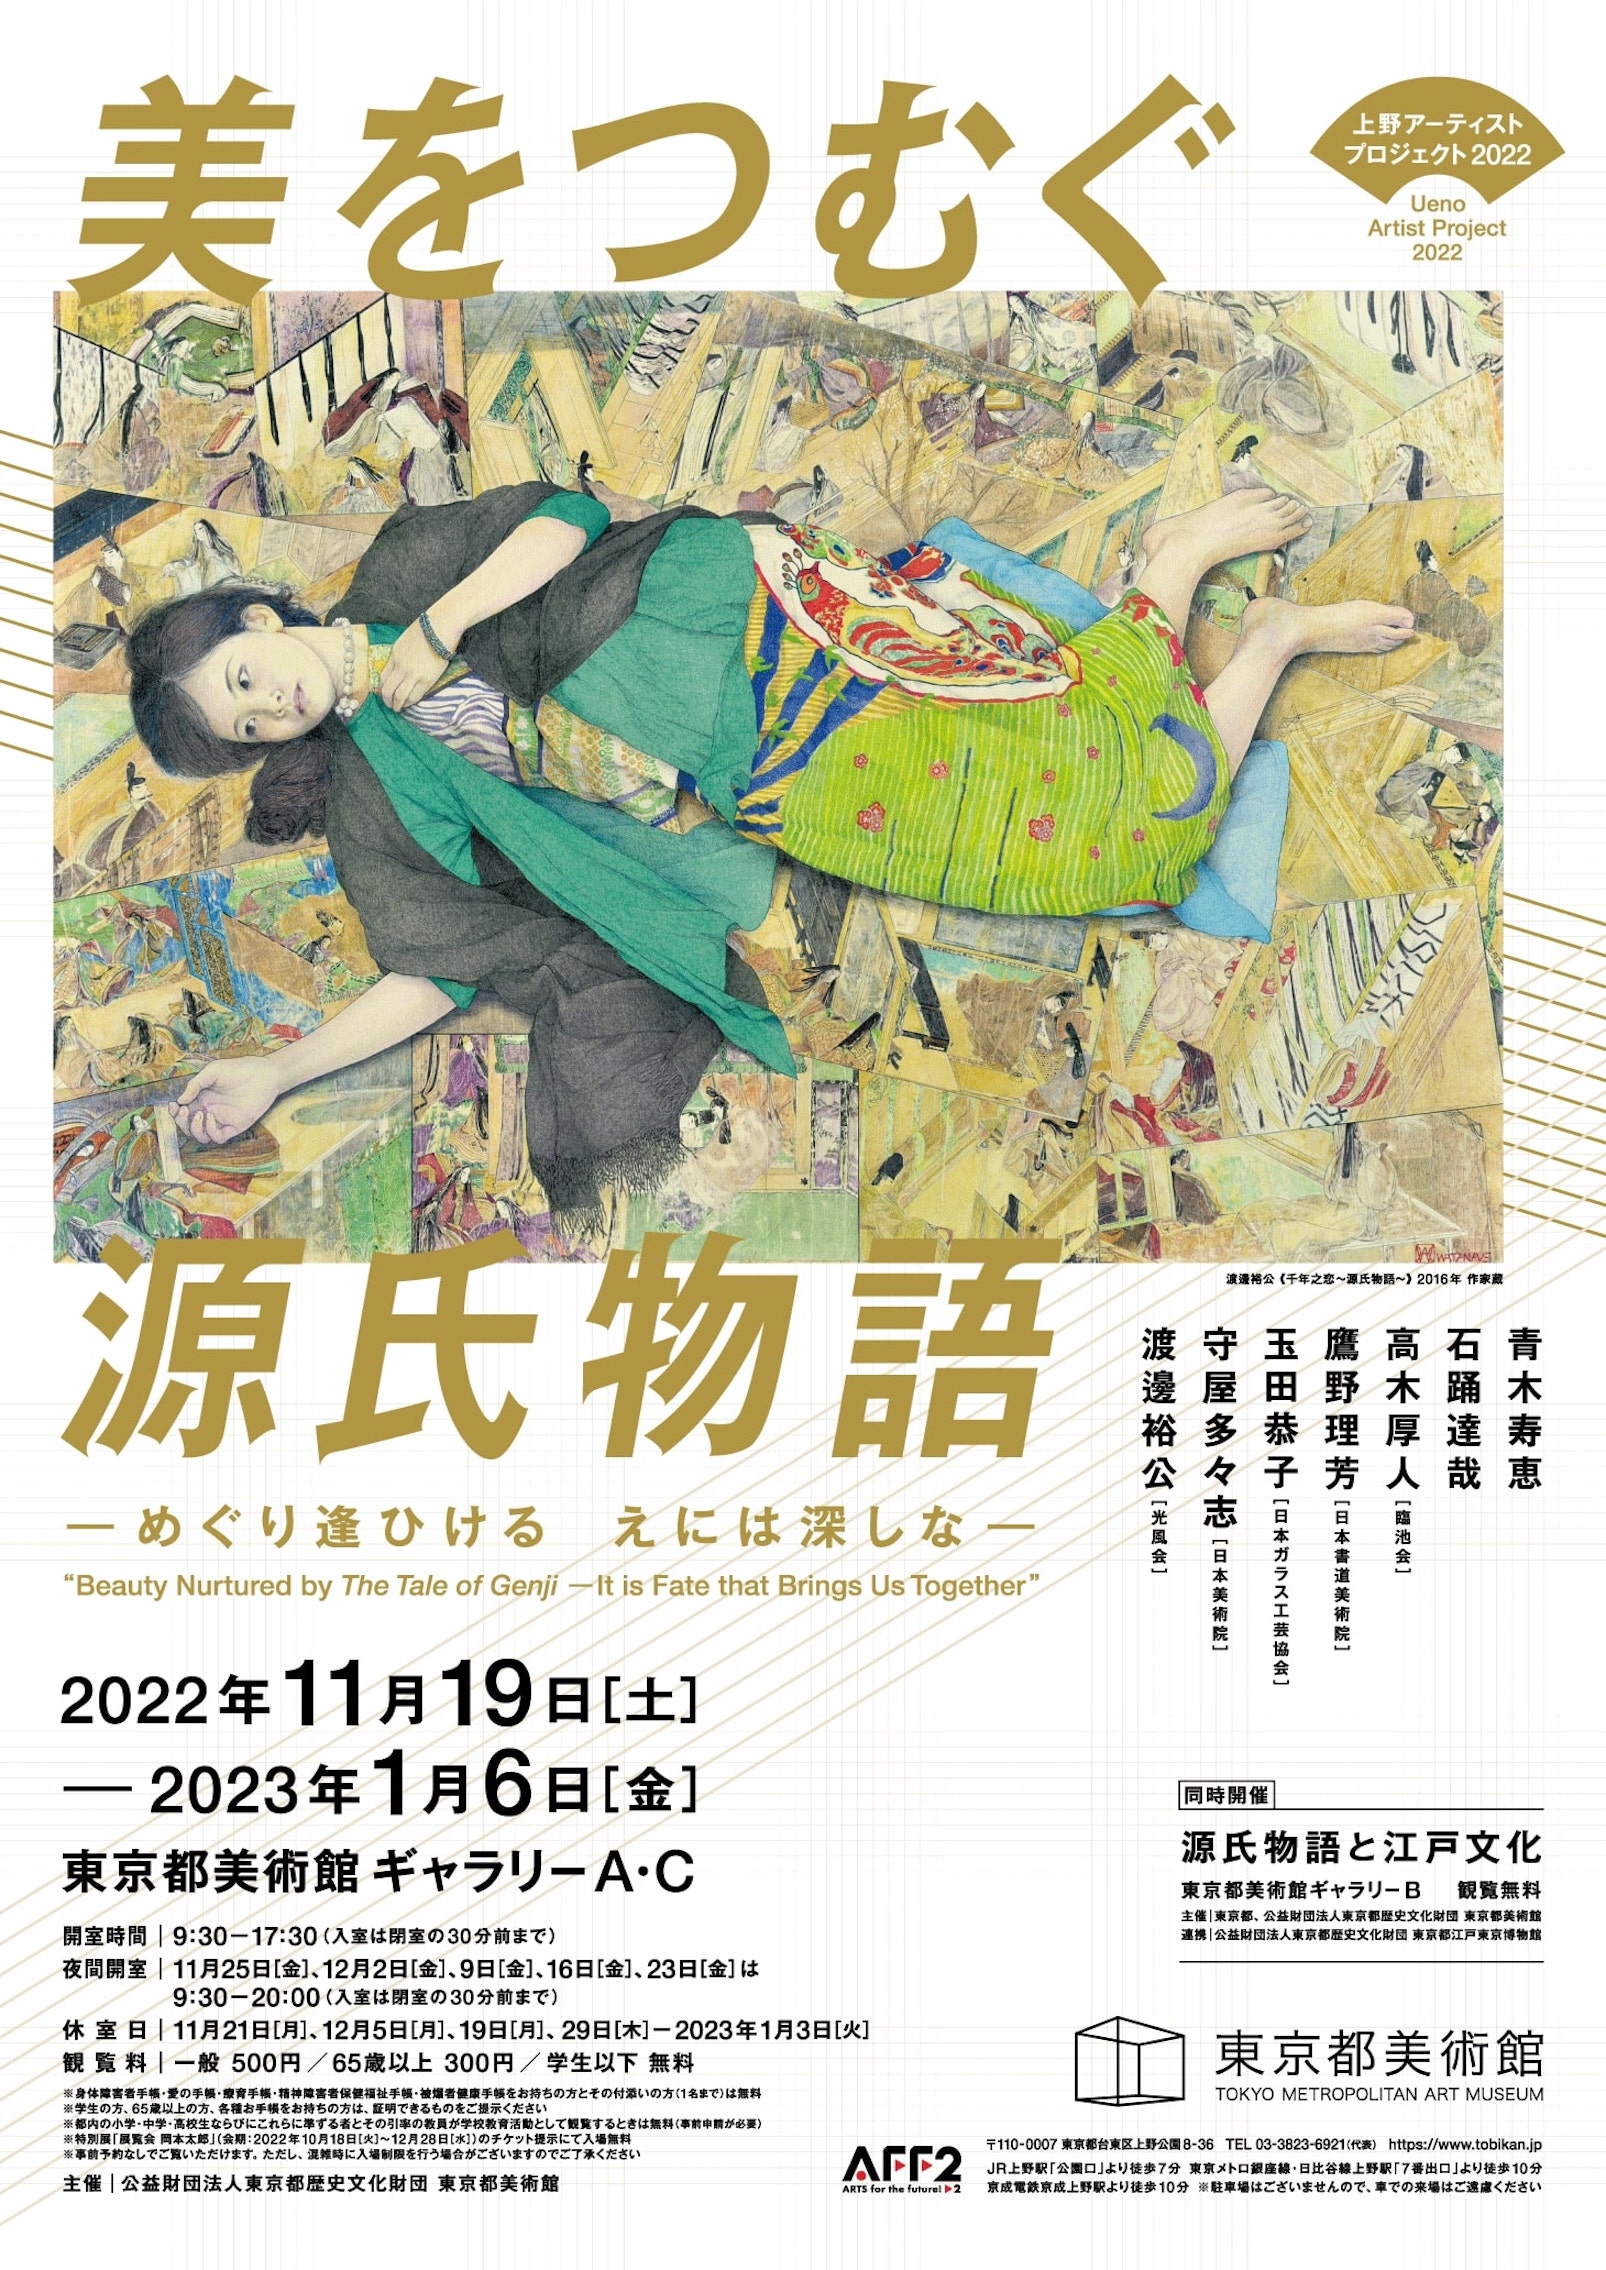 11月19日開幕！上野・東京都美術館が「源氏物語」がテーマの2つの展覧